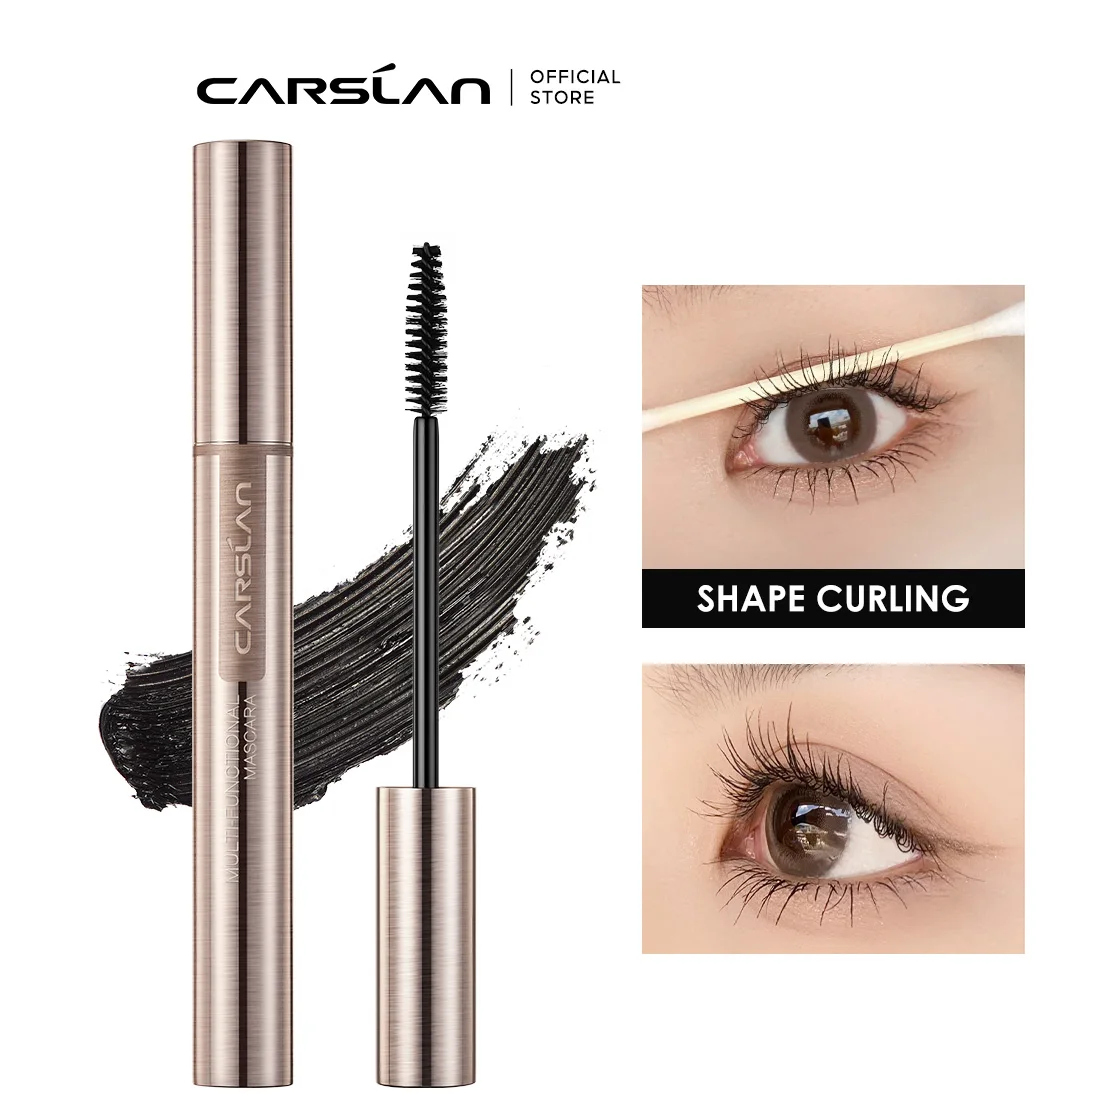 CARSLAN Multi Effect 3D Mascara Curling Volume Lashes Thick Lengthening Eyelashes Extension Waterproof Long-wearing Makeup